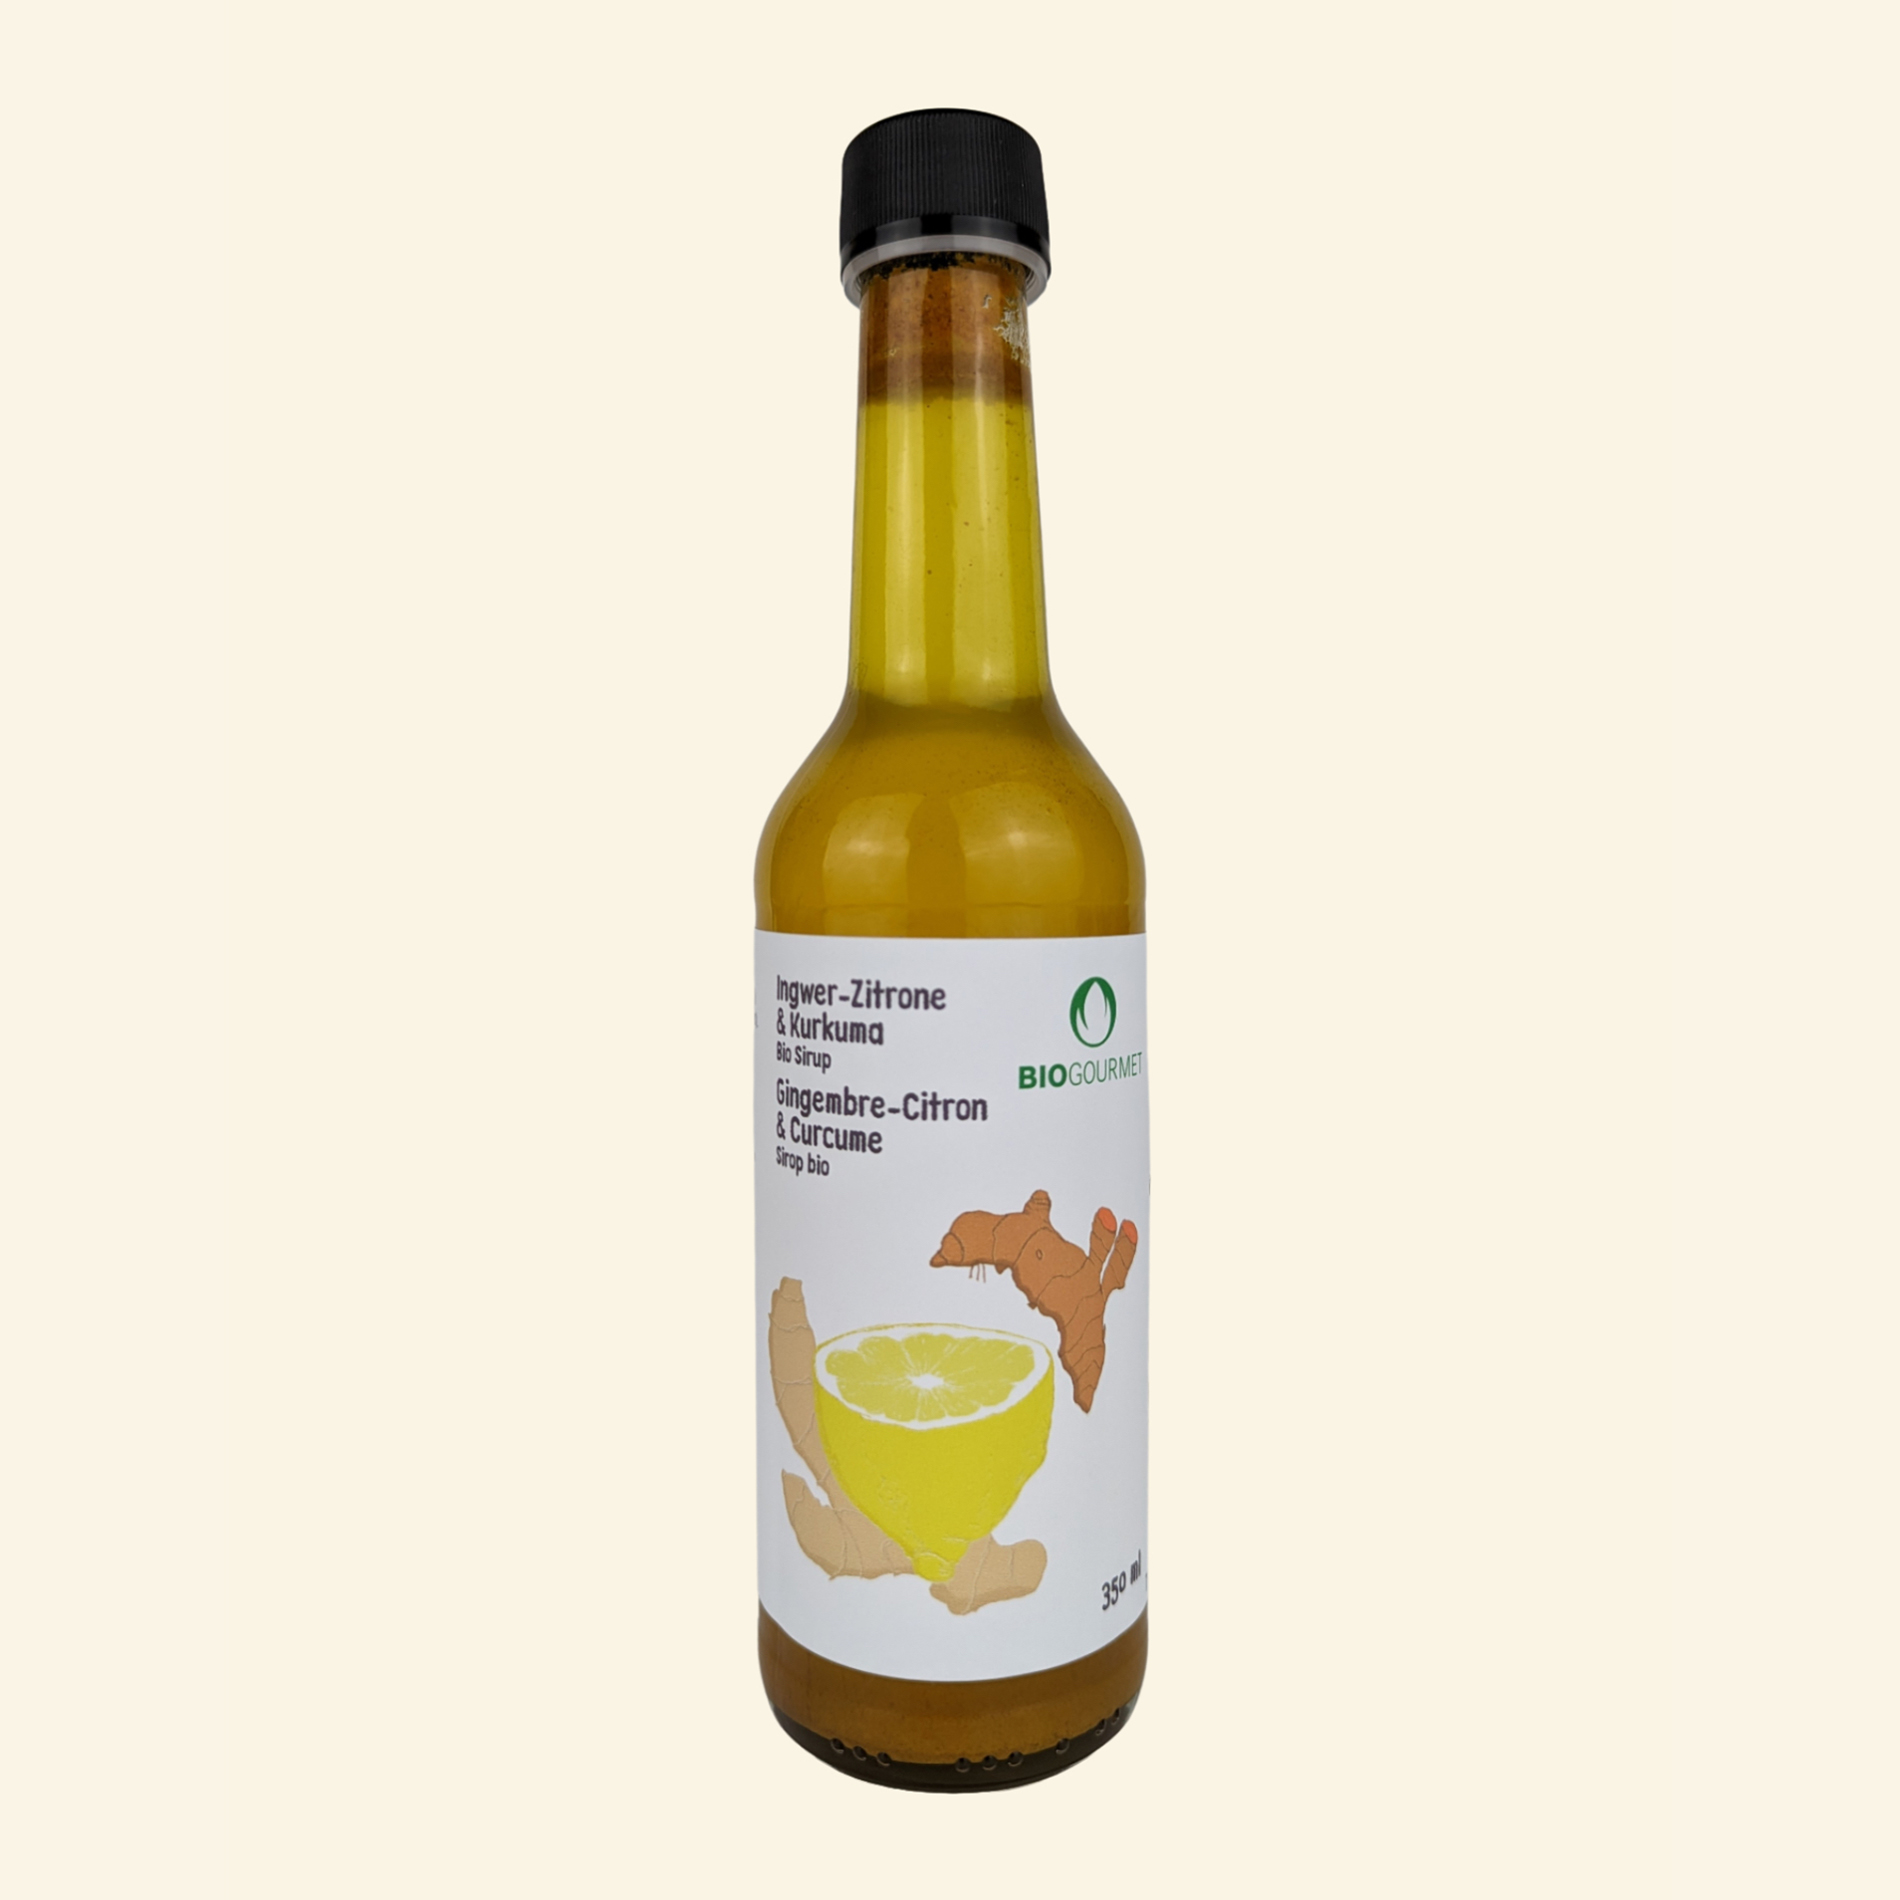 Sirup Ingwer-Zitrone & Kurkuma, 35cl